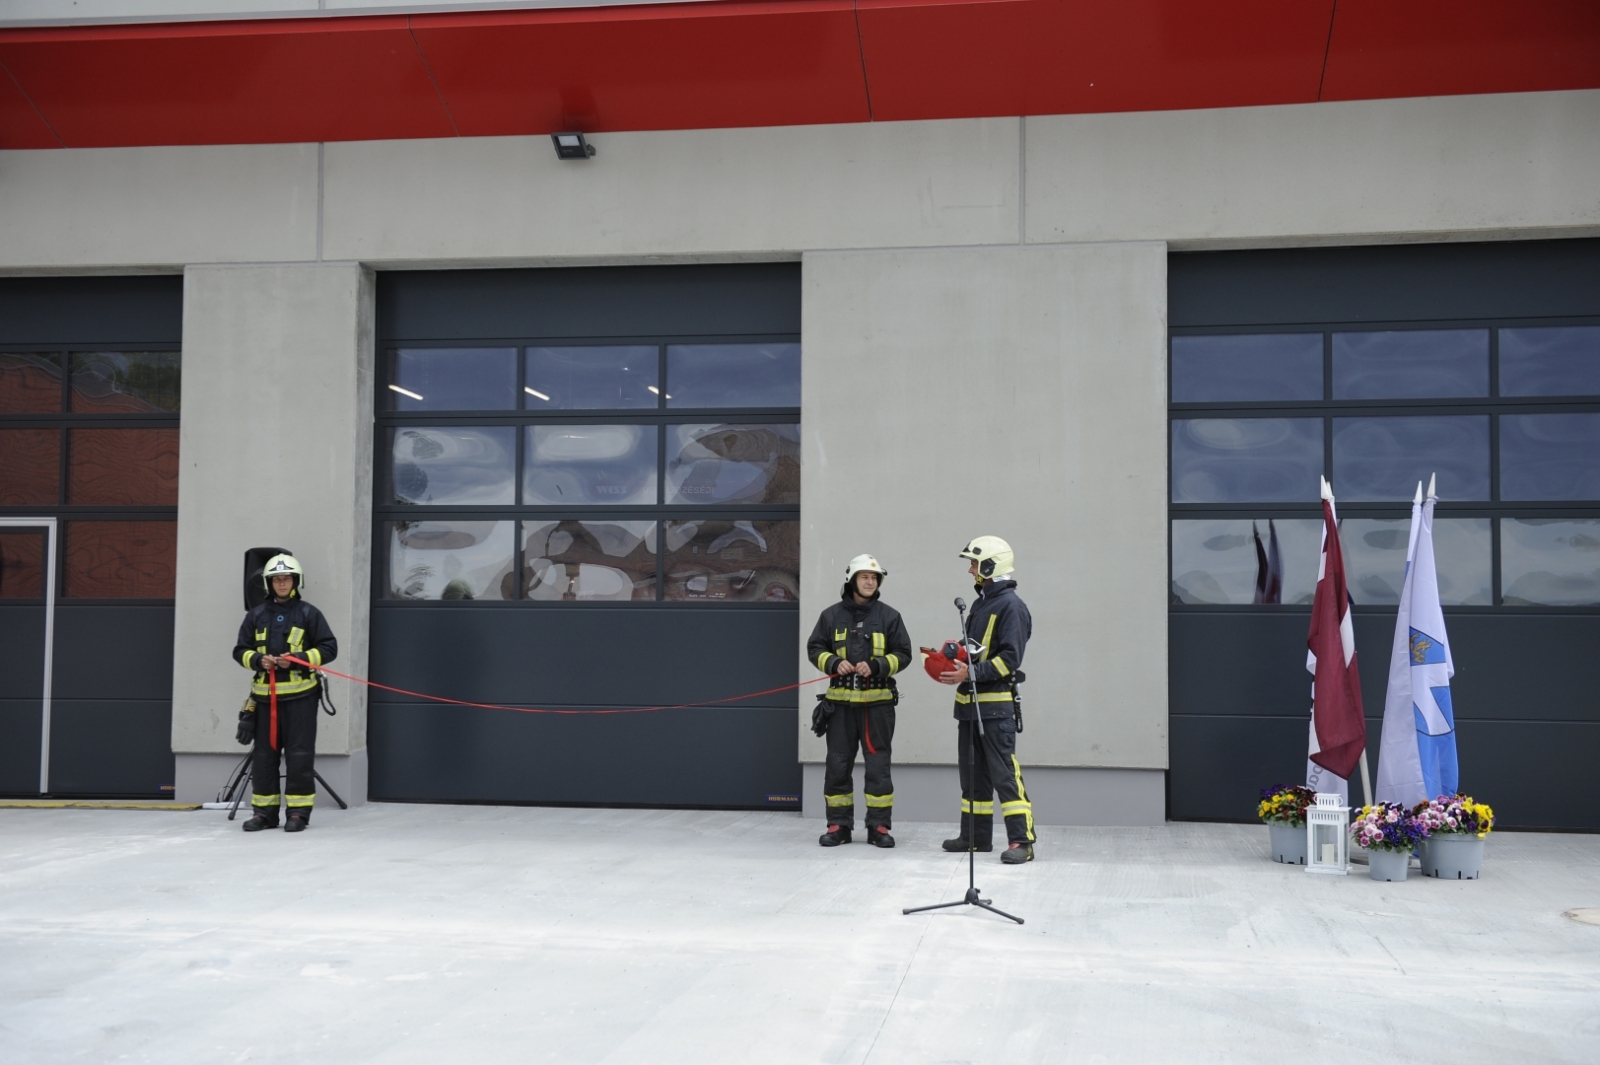 Pie VUGD pelēki sarkanā DEPO stāv trīs ugunsdzēsēji glābēji. Divi no viņiem stāv katrs savā pusē ieejas durvīm, turot rokās sarkanu lenti.